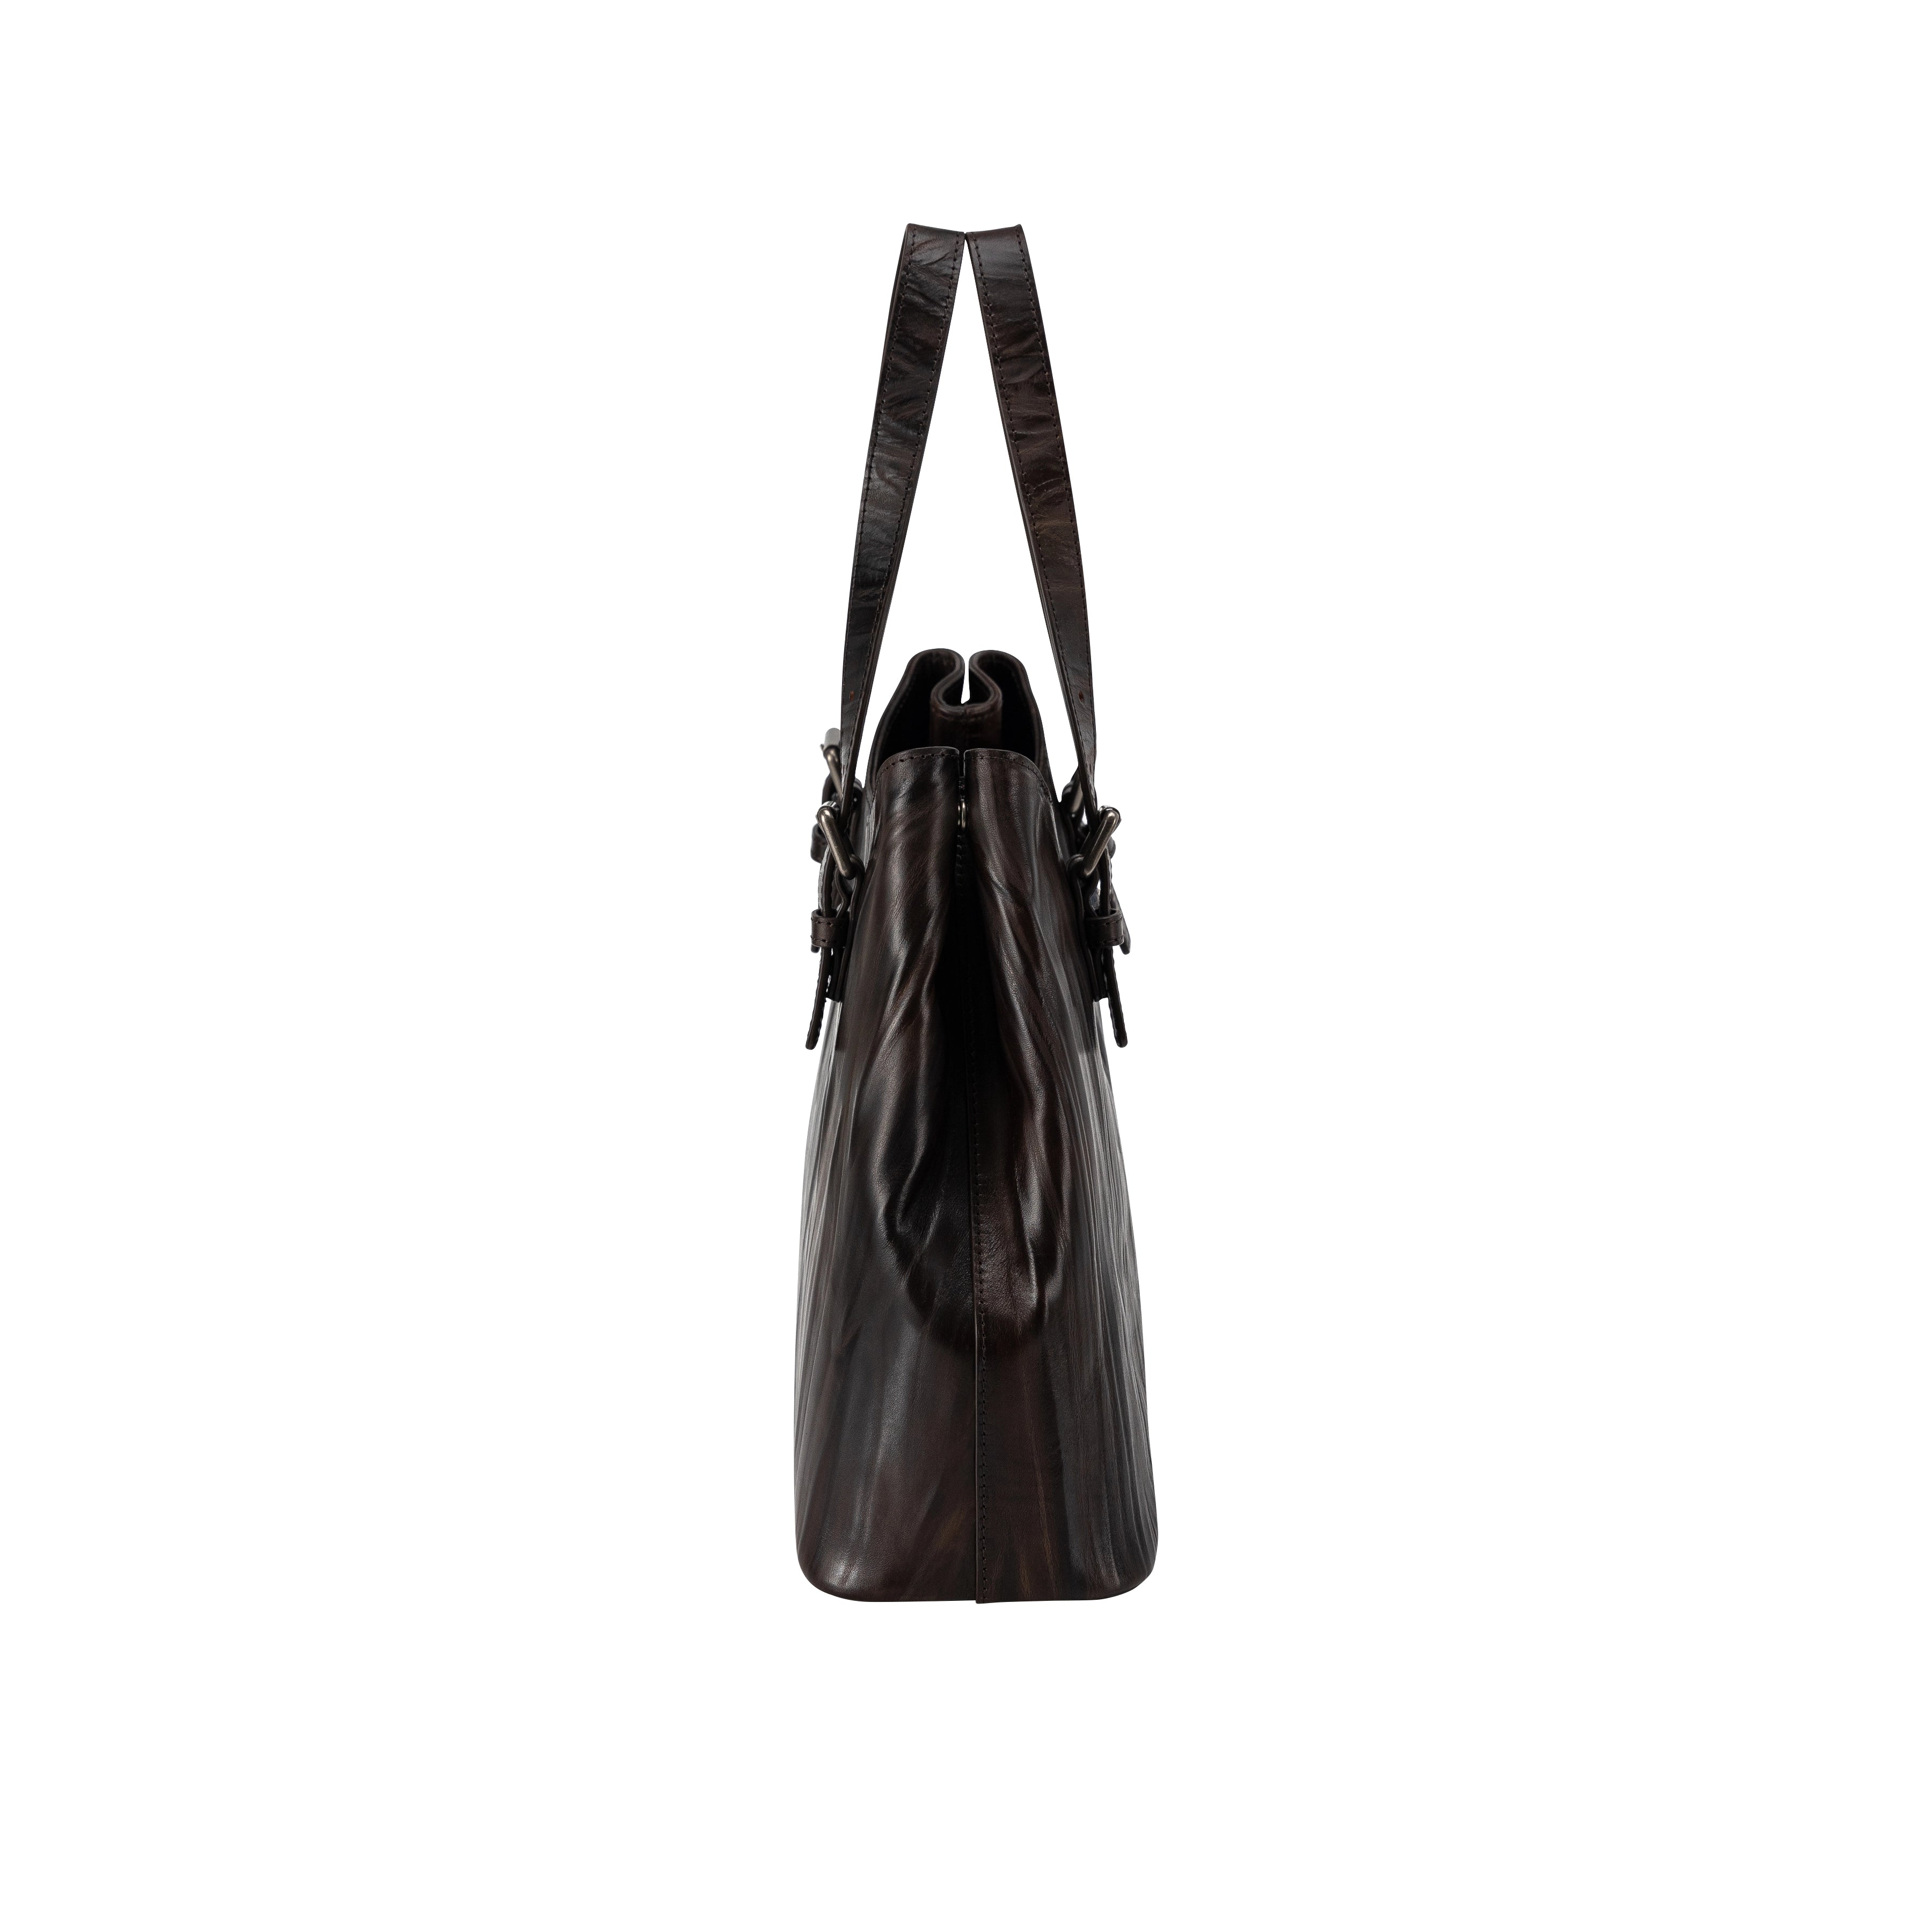 Italian leather genuine leather handbag